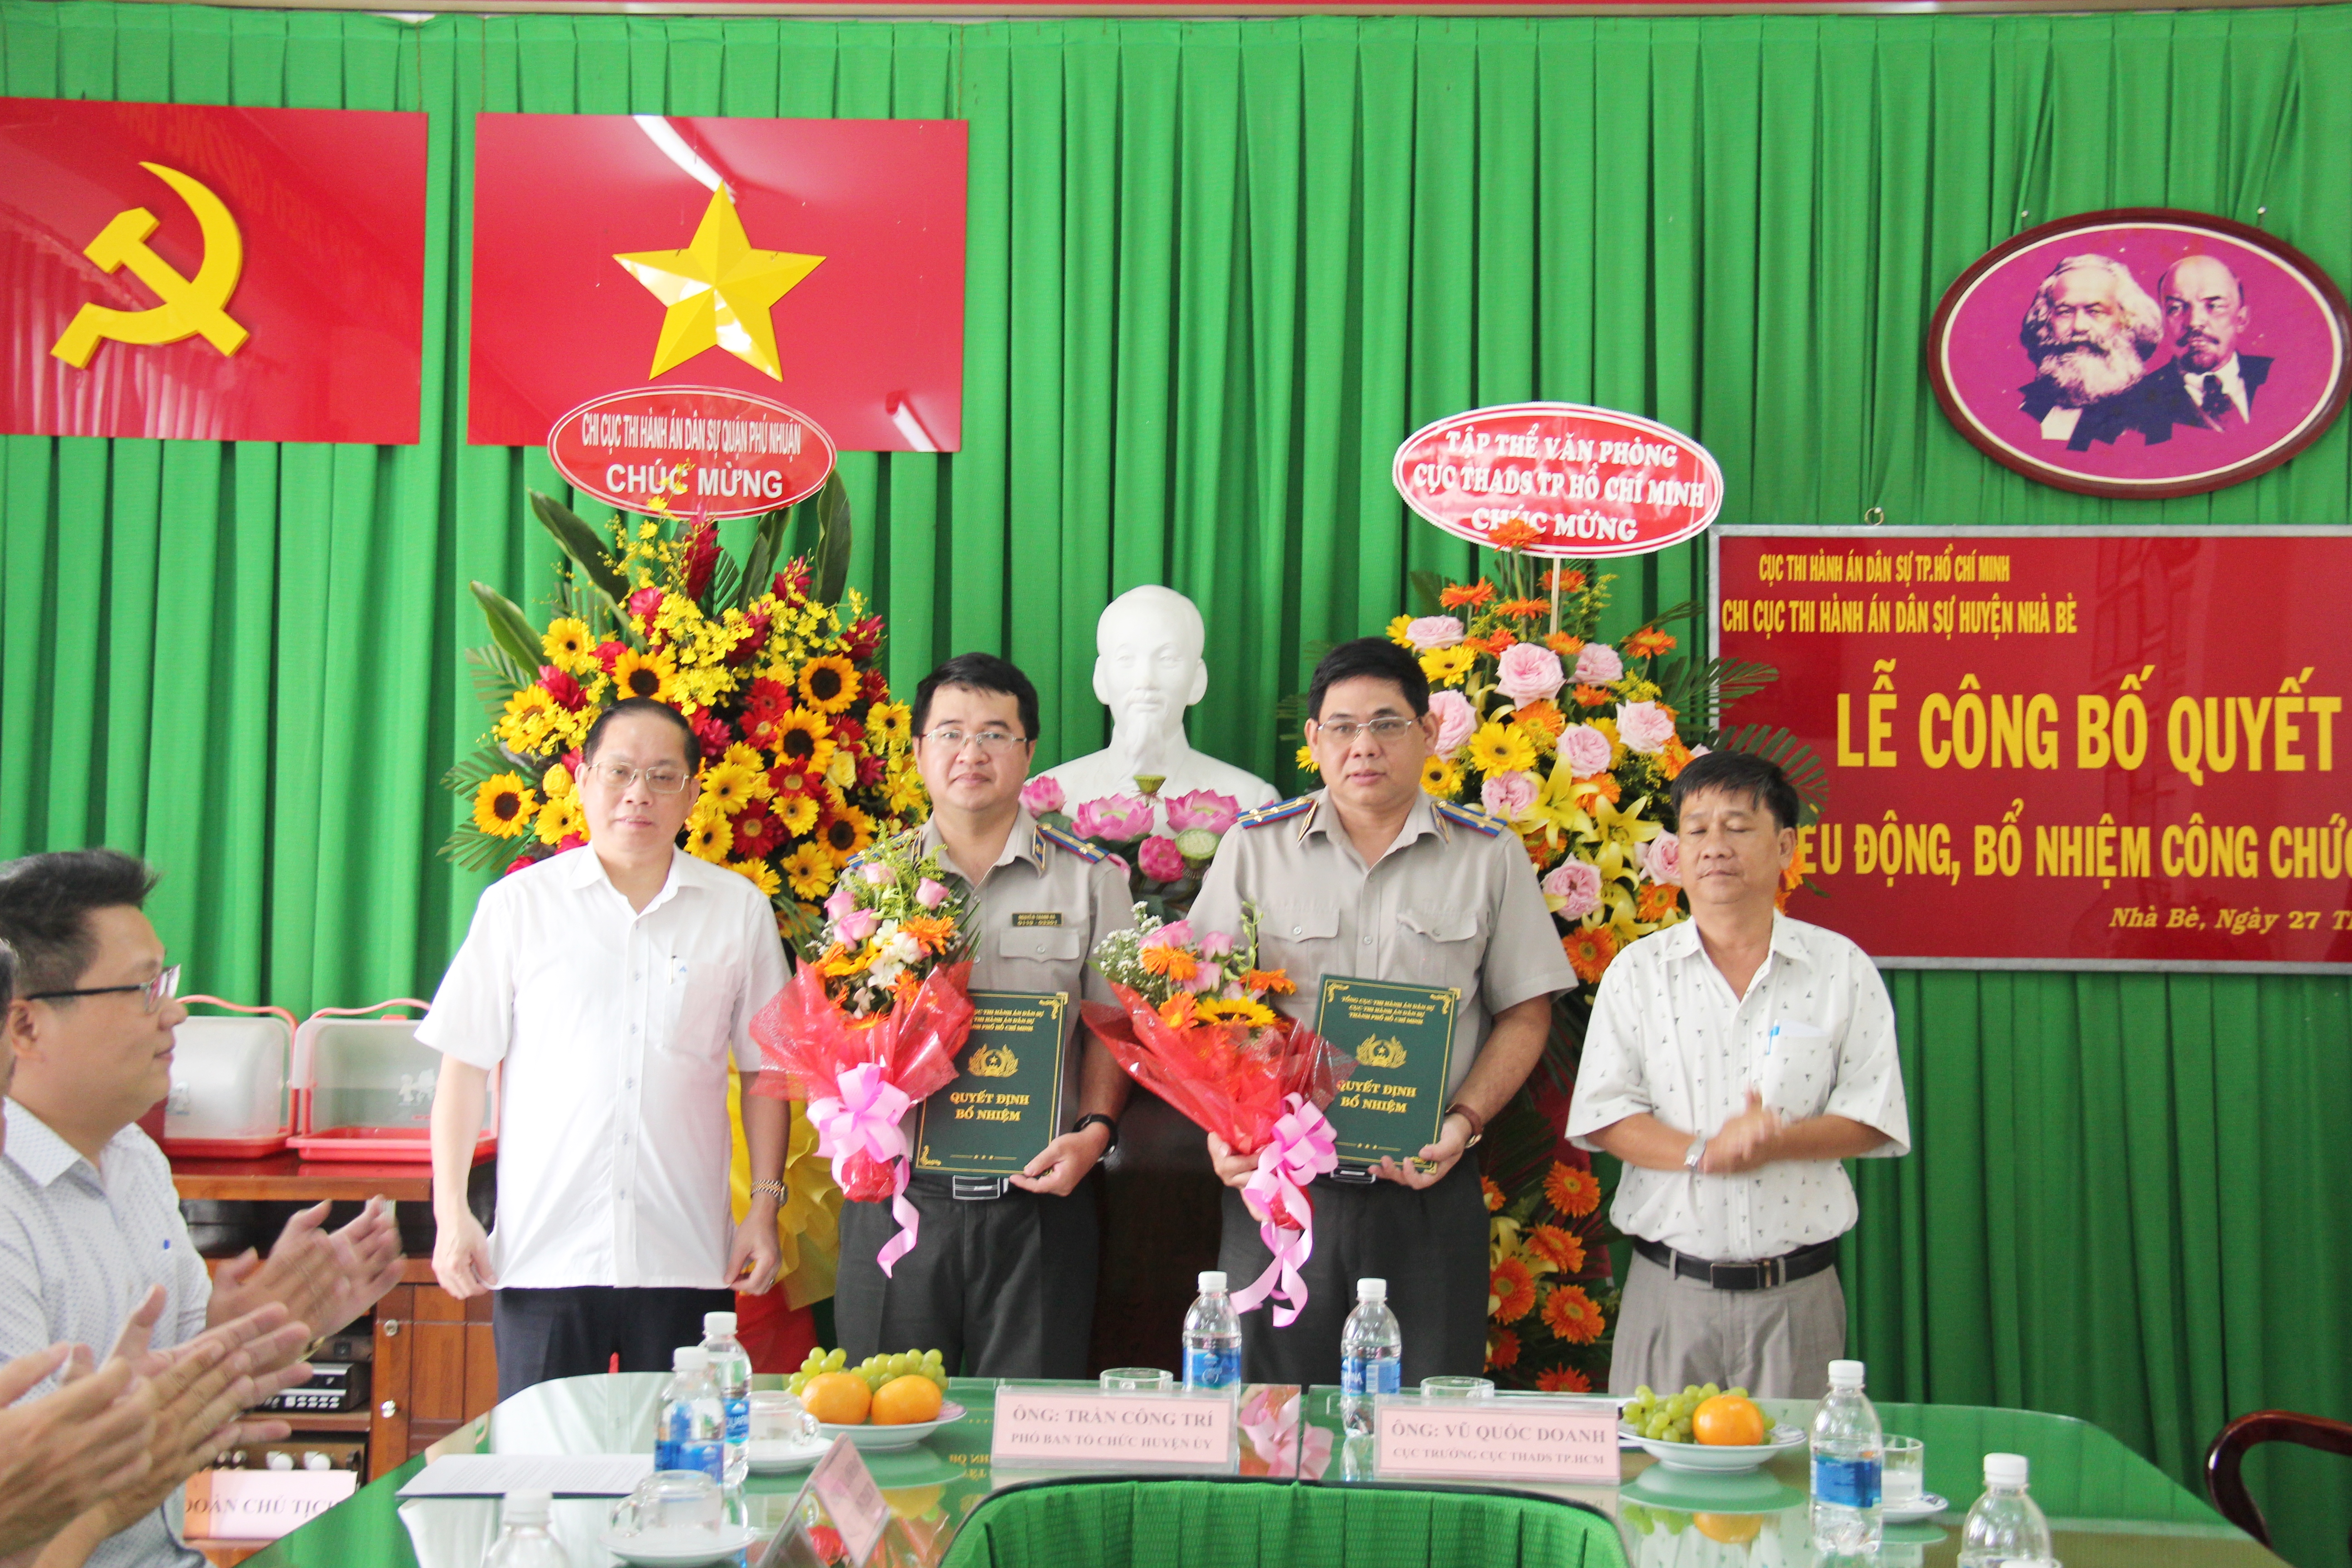 Thi hành án dân sự Thành phố Hồ Chí Minh công bố các Quyết định điều động, bổ nhiệm Chi cục trưởng